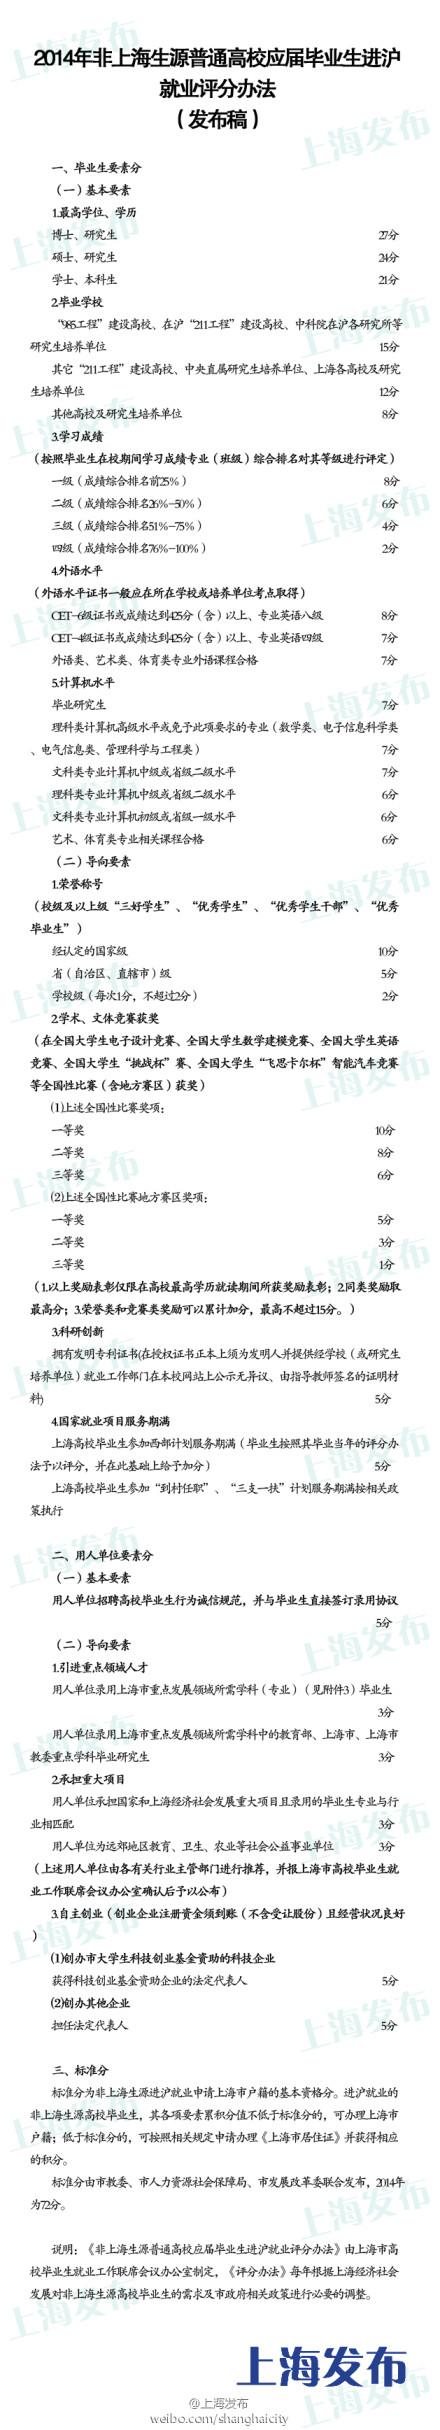 非上海生源应届生落户评分办法公布 标准分72分